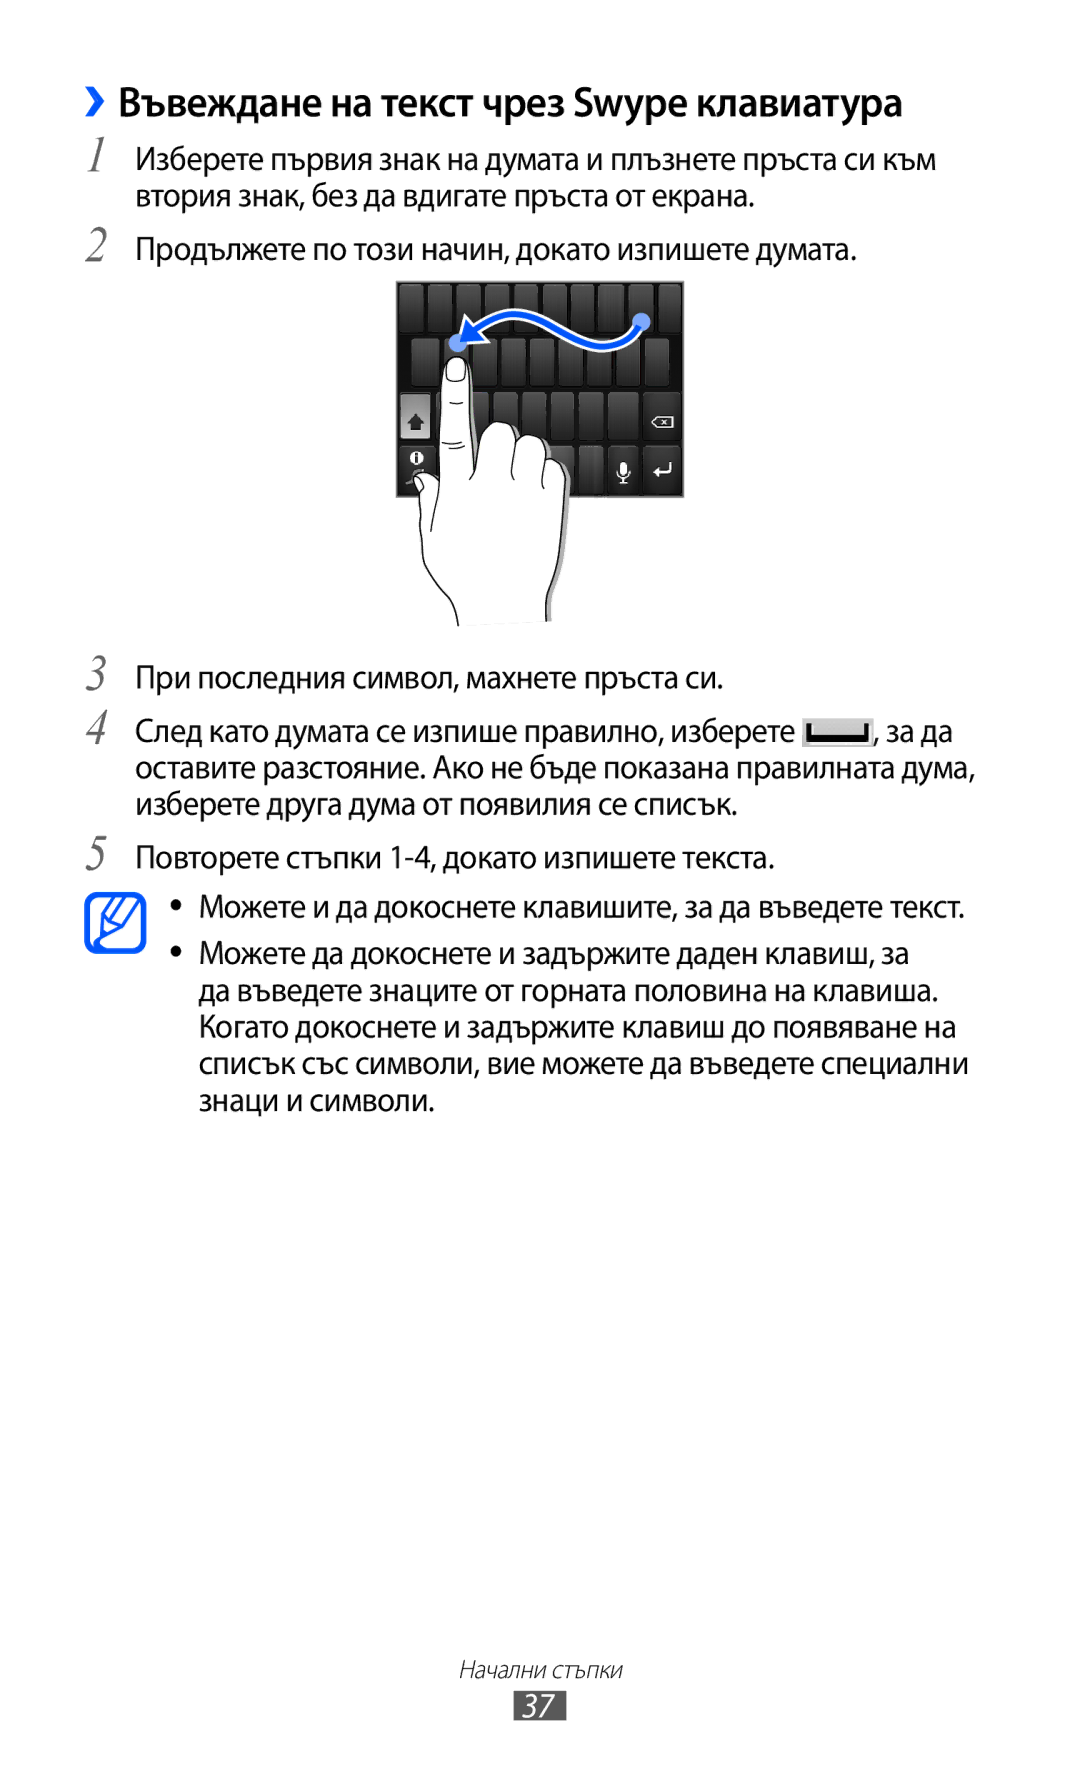 Samsung GT-S6802HKAVVT manual ››Въвеждане на текст чрез Swype клавиатура, Повторете стъпки 1-4, докато изпишете текста 